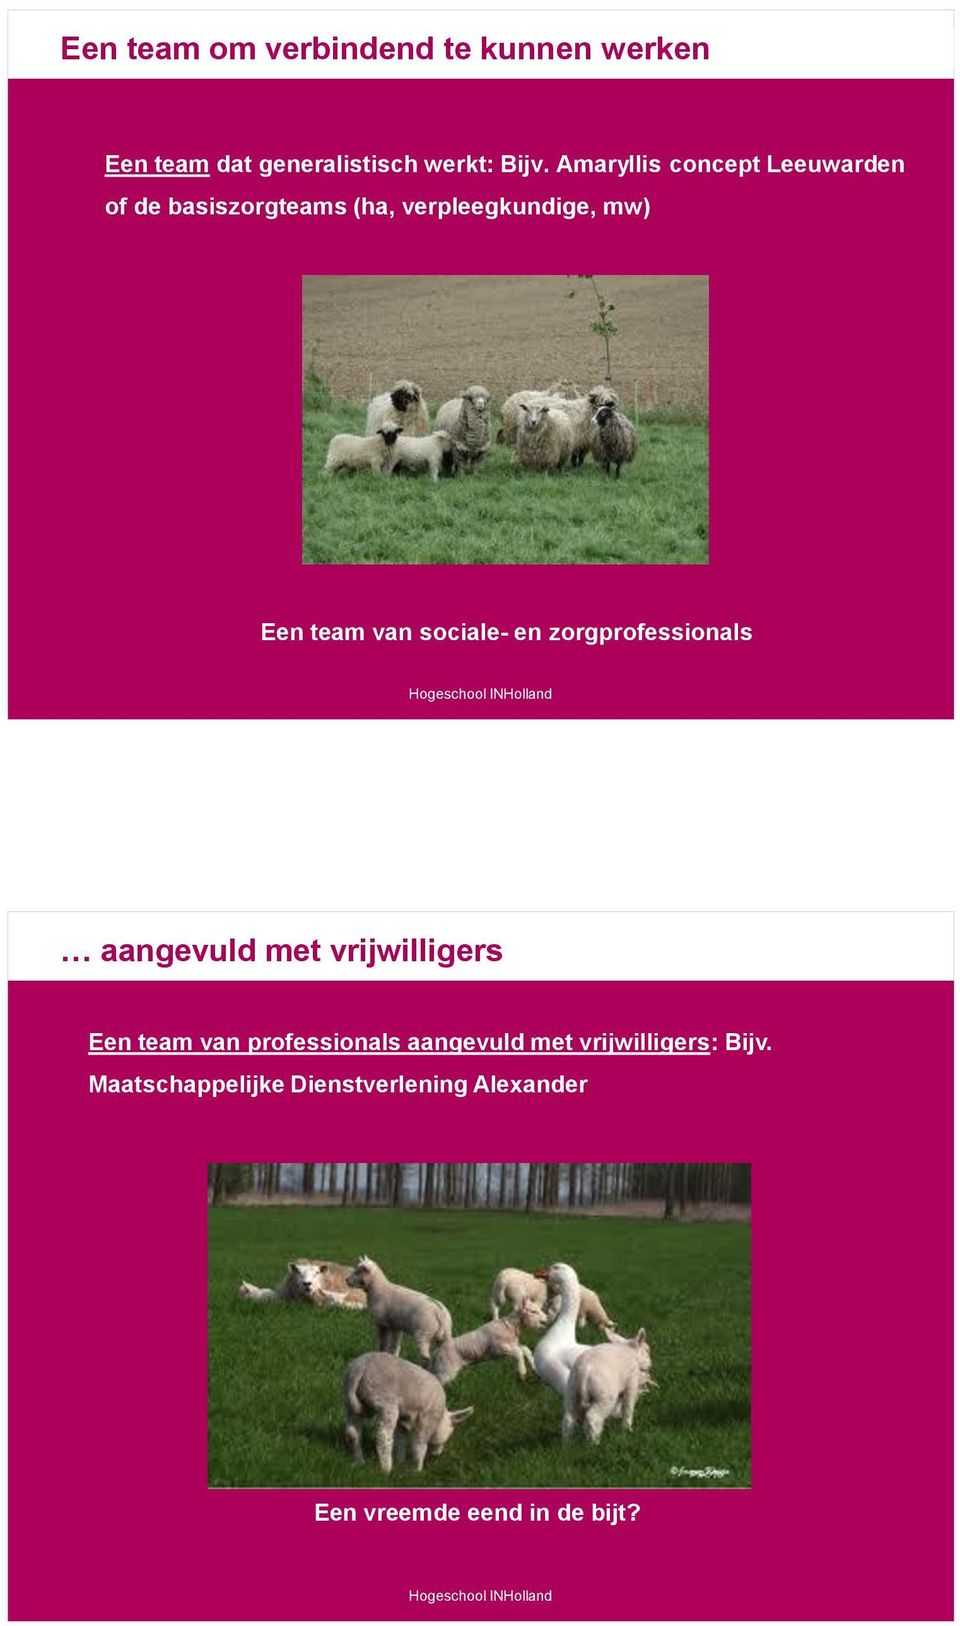 Amaryllis concept Leeuwarden of de basiszorgteams (ha, verpleegkundige, mw) Een team van sociale-